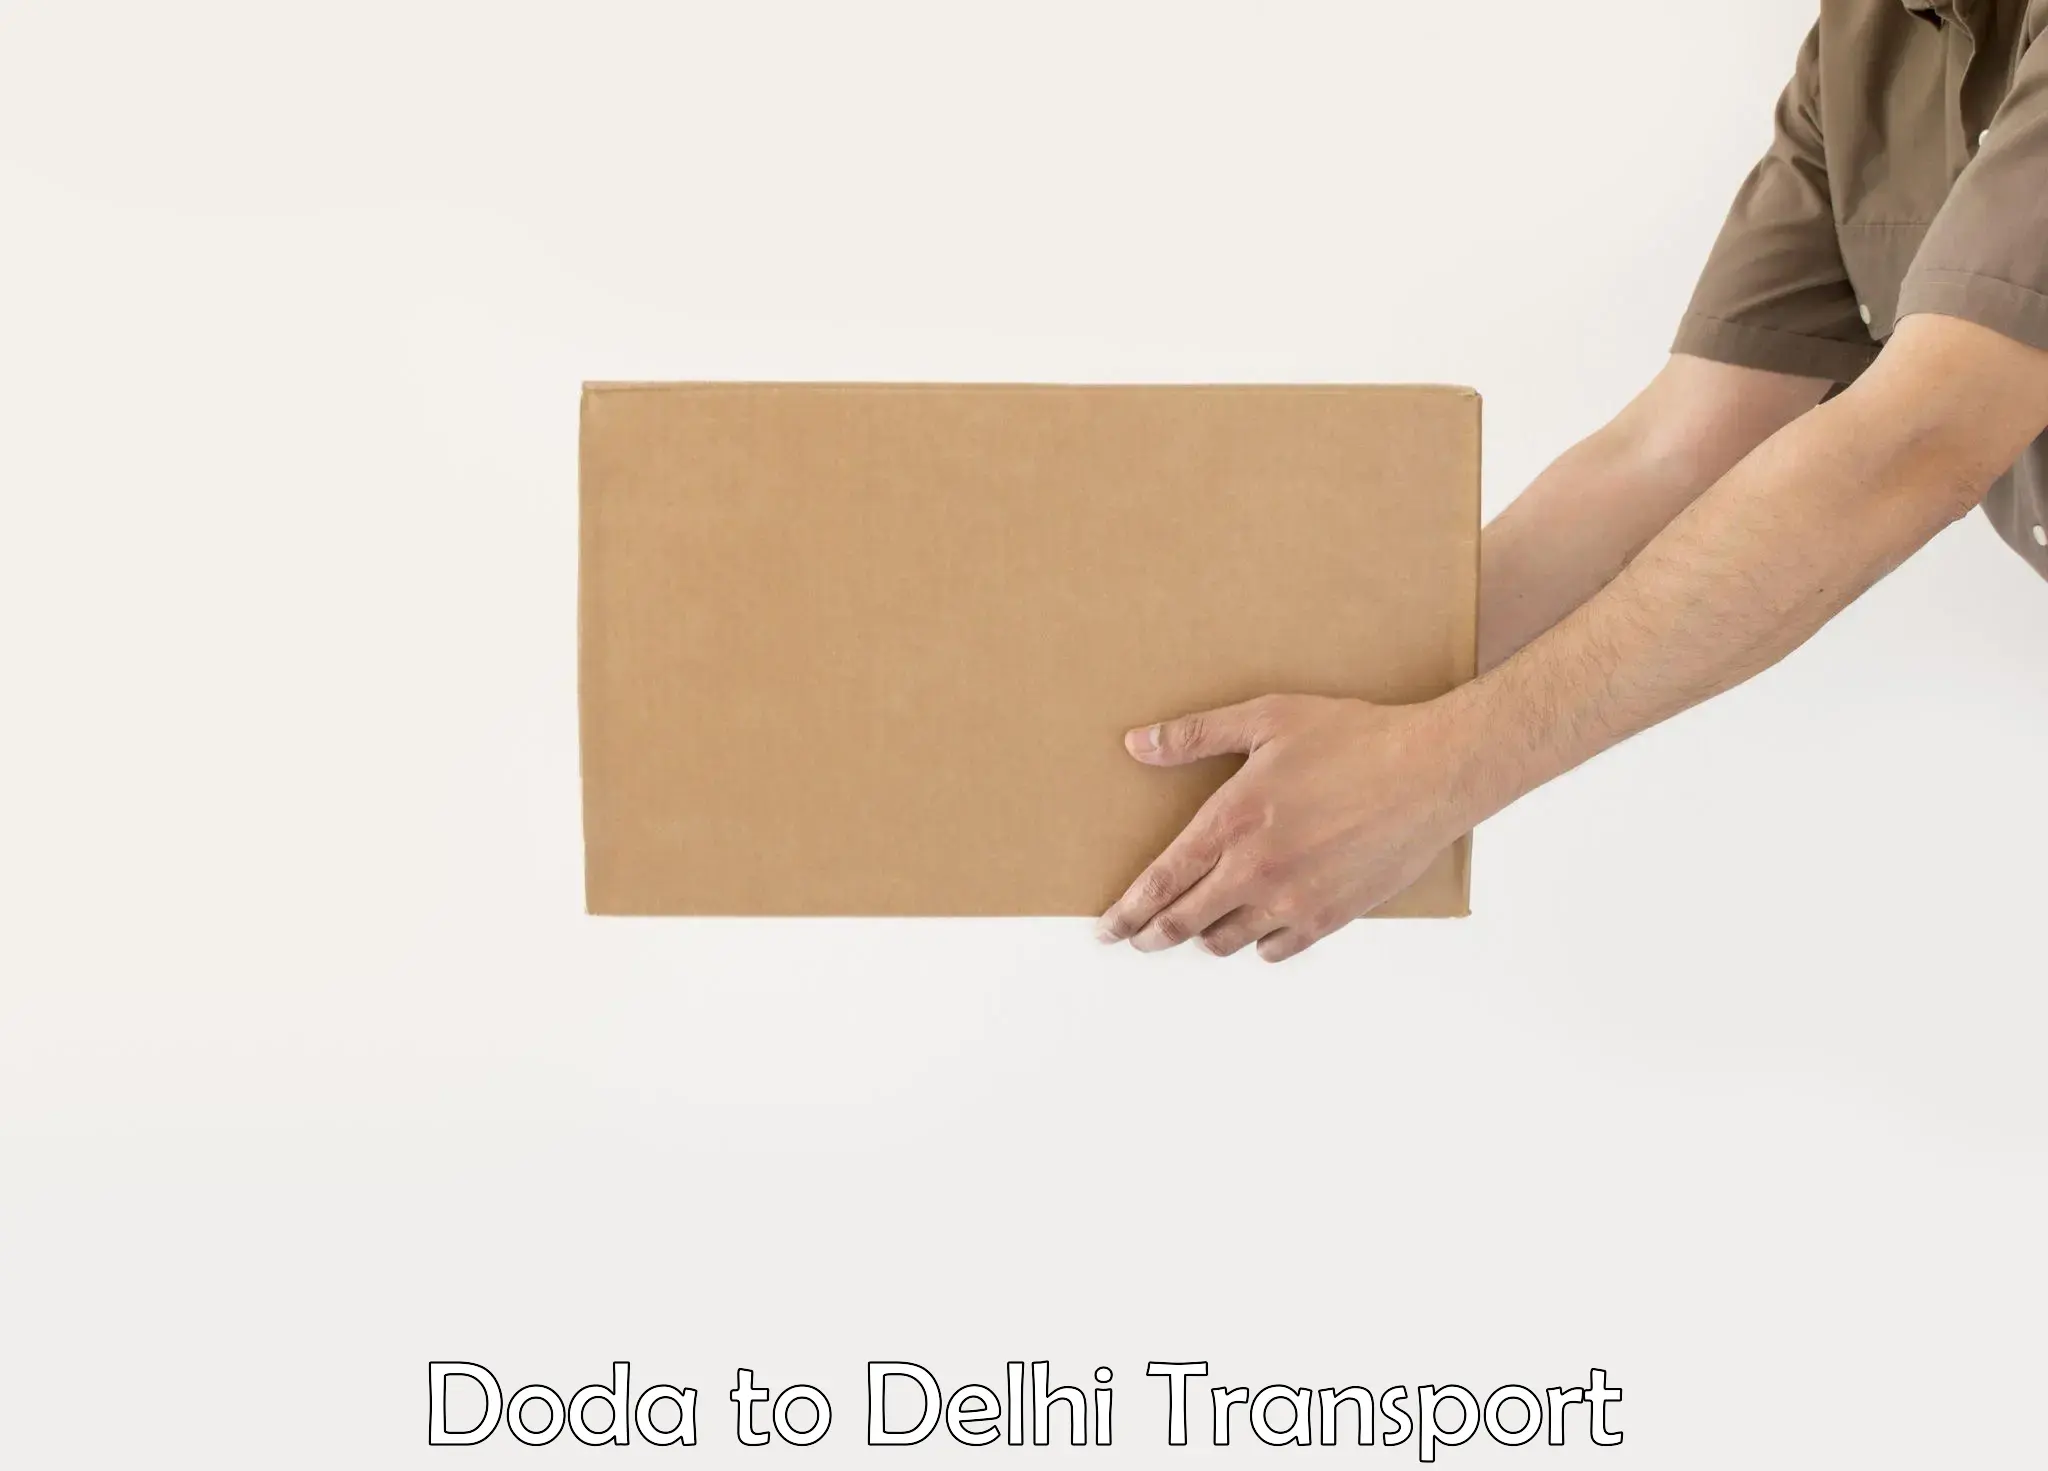 Transport in sharing in Doda to Delhi